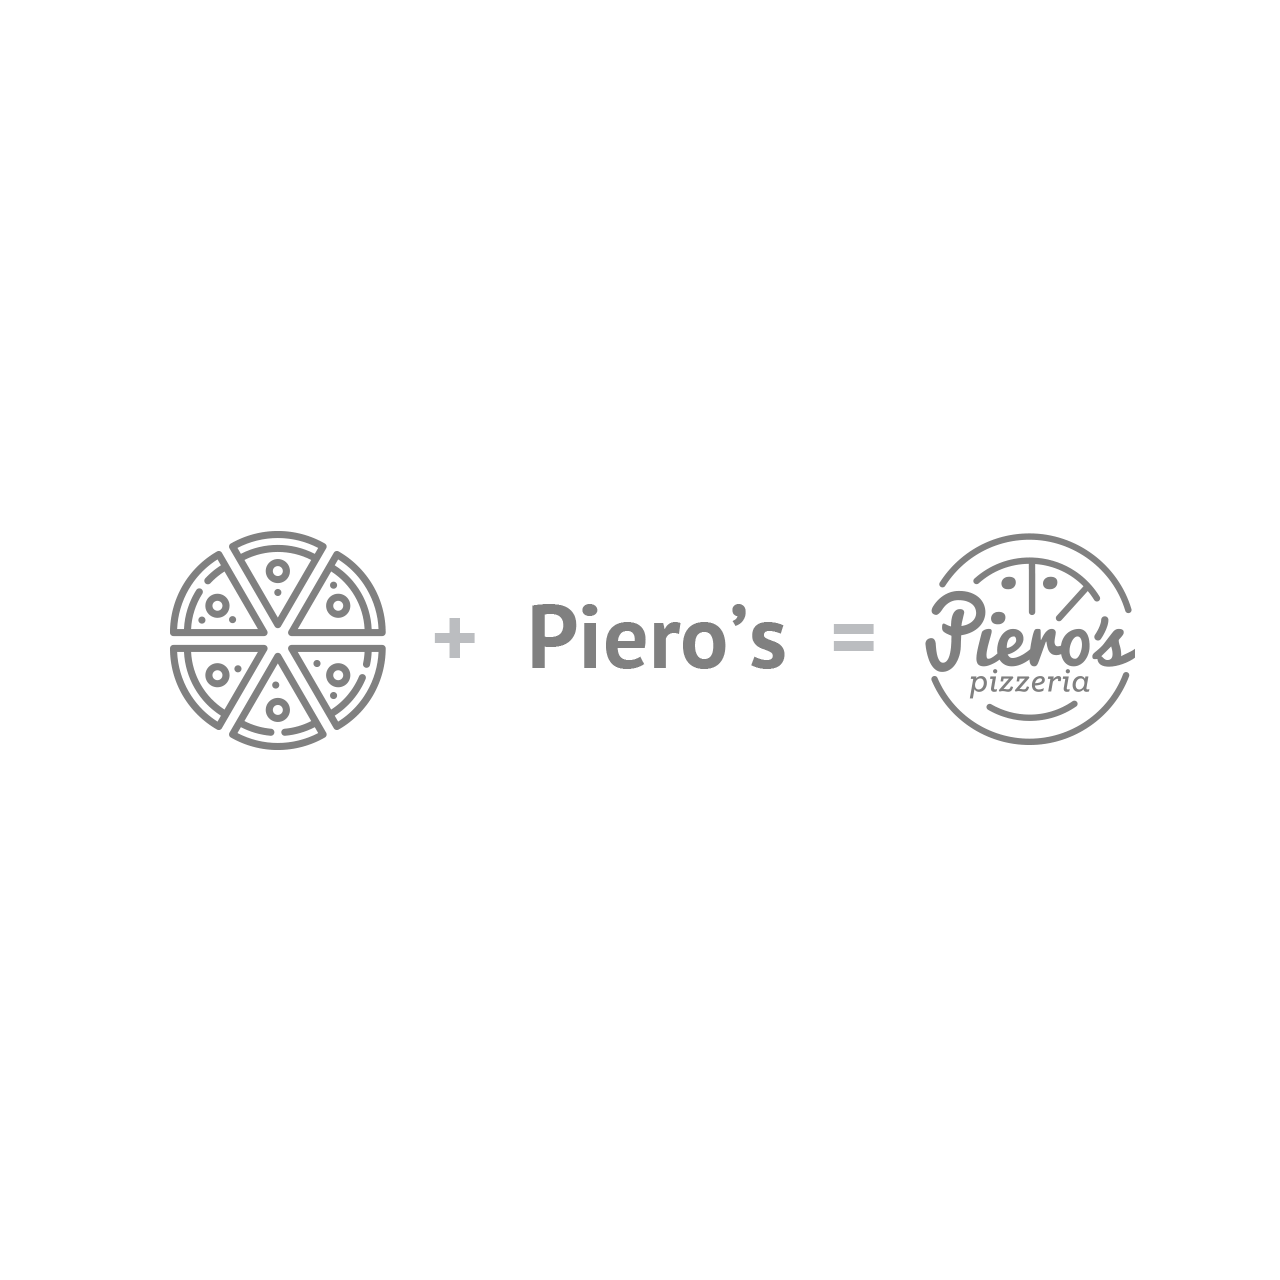 maquetado y proceso de diseño del logotipo para Piero's Pizza.